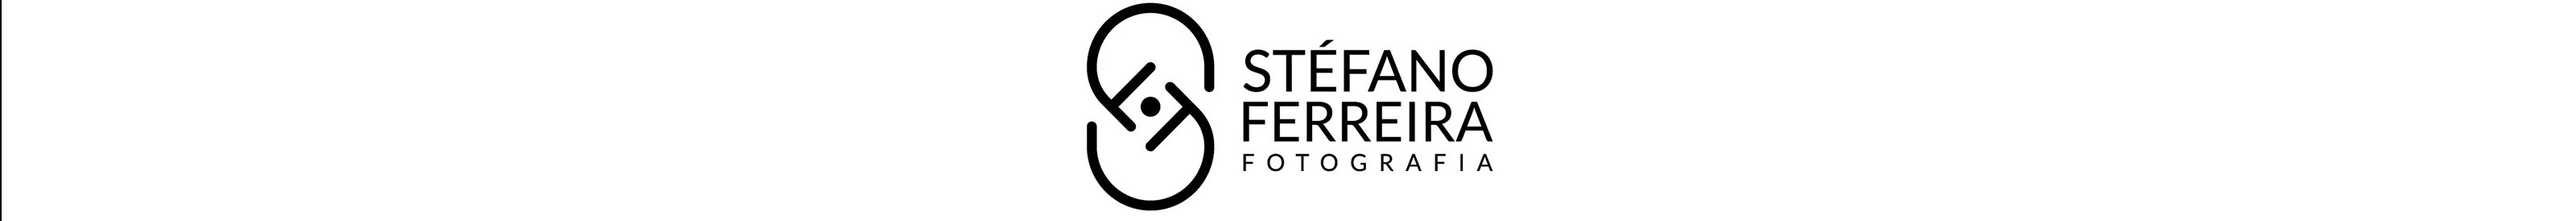 Stéfano Ferreira's profile banner